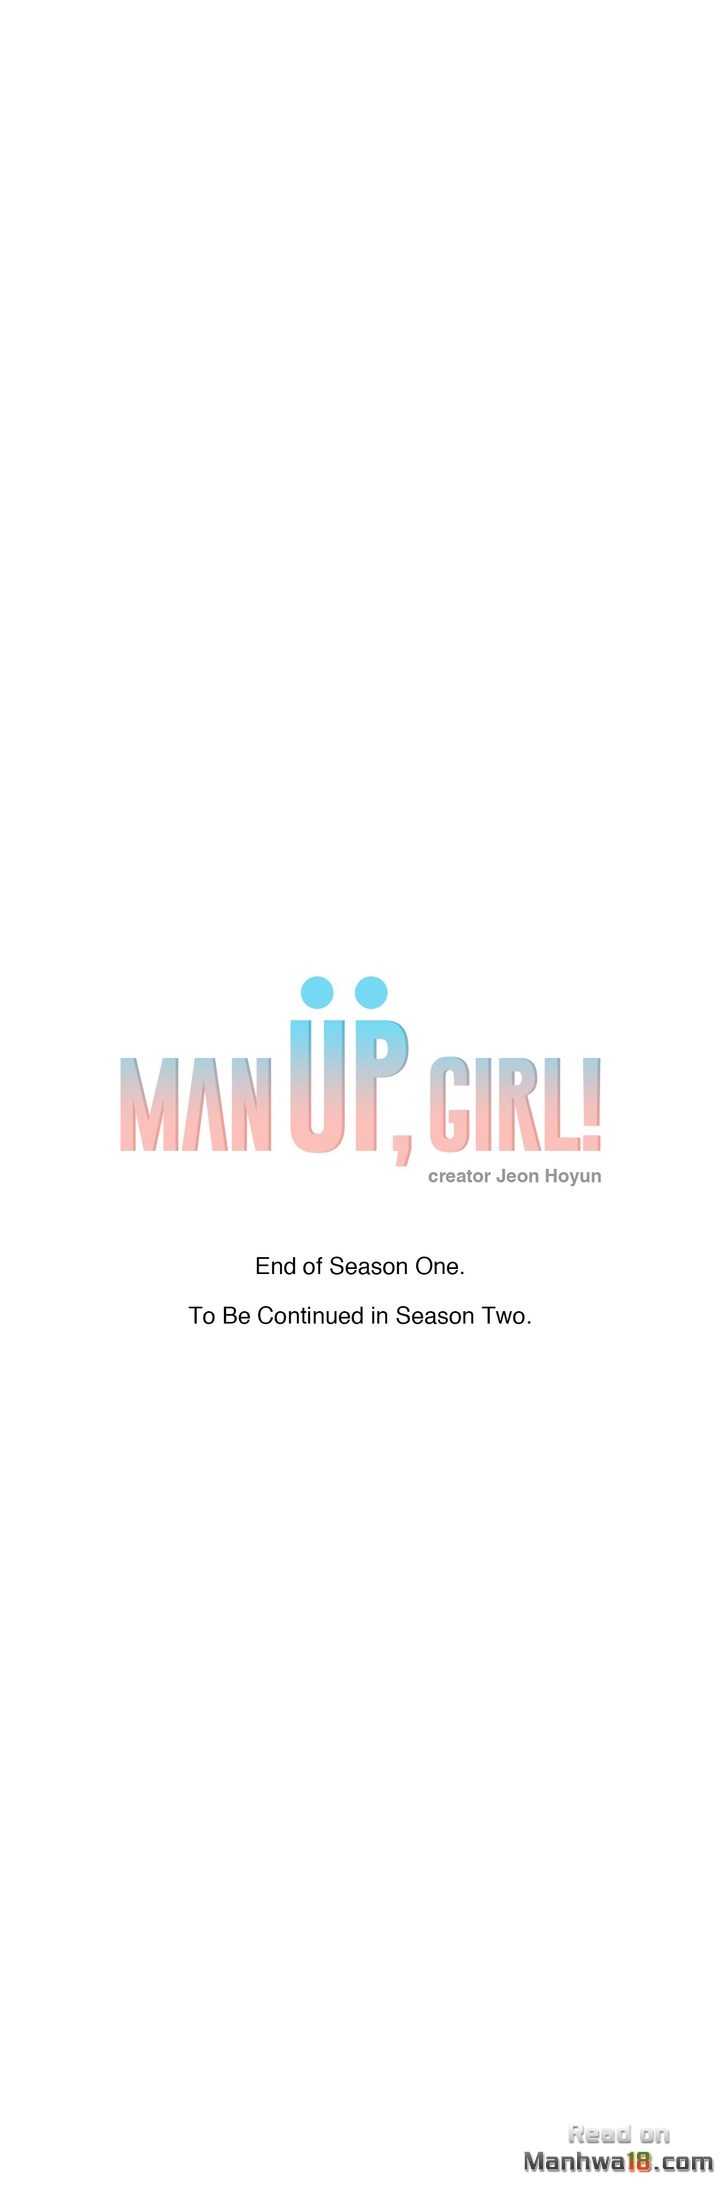 The image Man Up! Girl - Chapter 34 END ss1 - ljBoqO5OERlLWNl - ManhwaManga.io